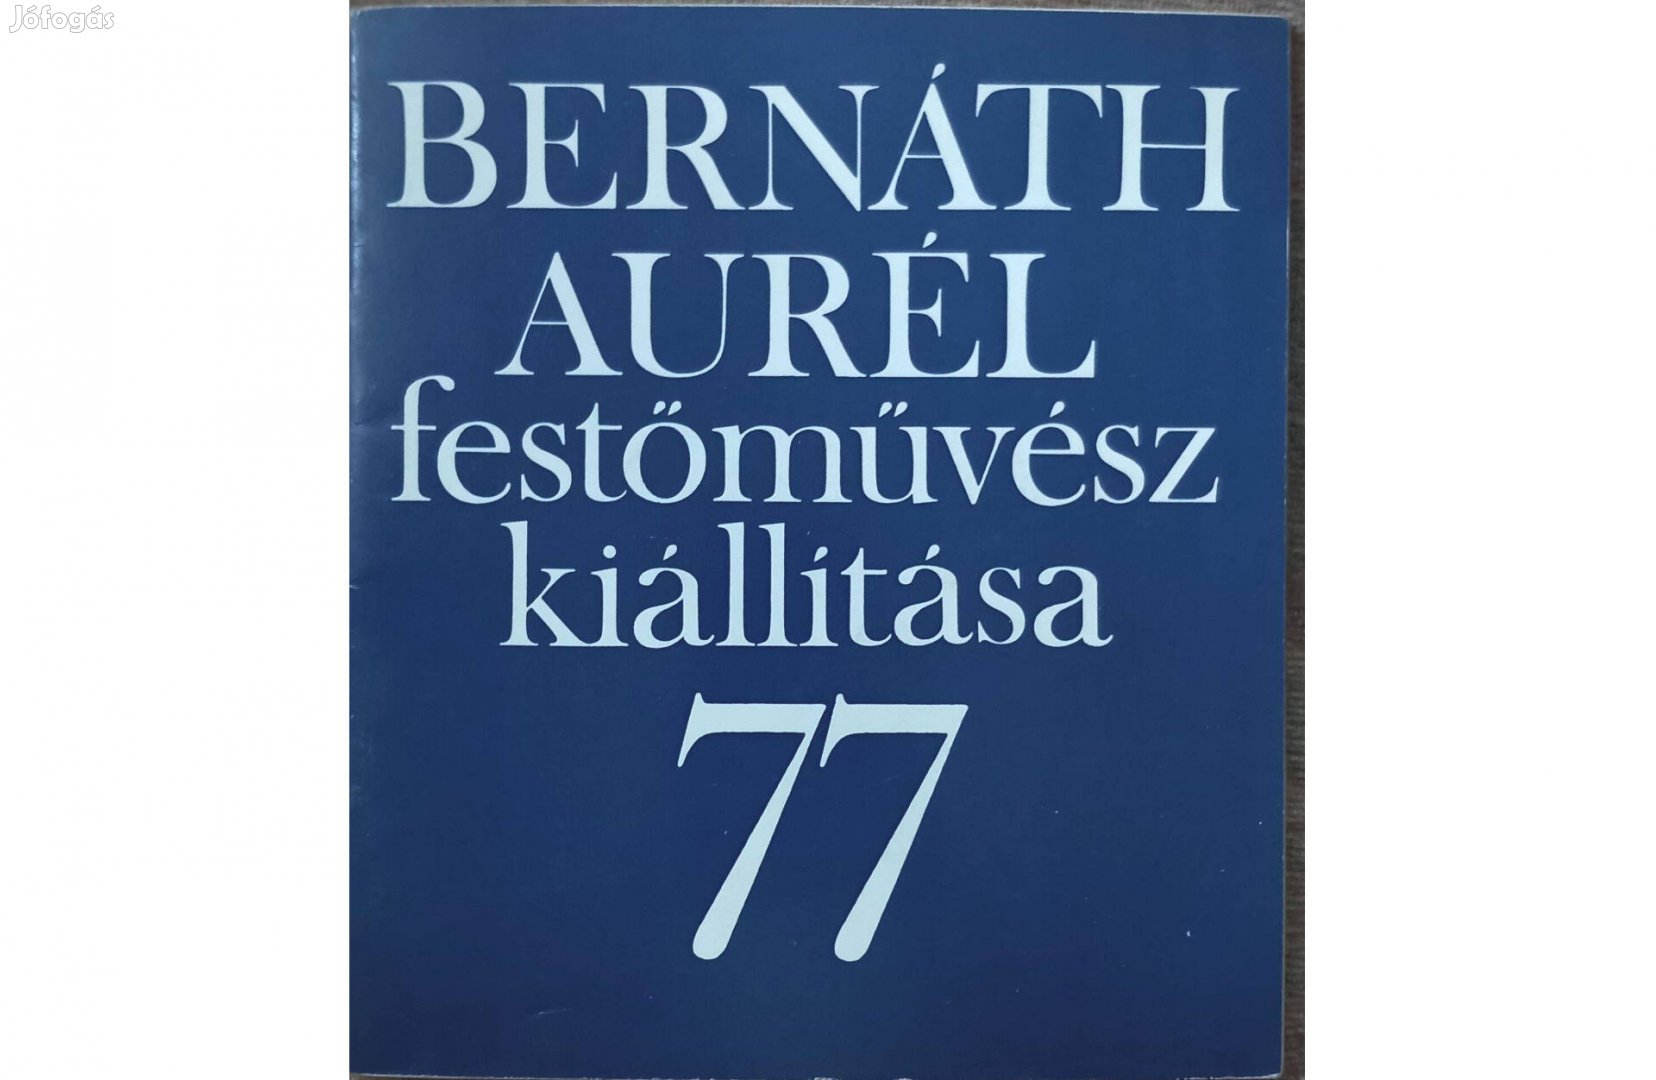 Bernáth Aurél festőművész kiállítása, 77, Tihanyi Múzeum